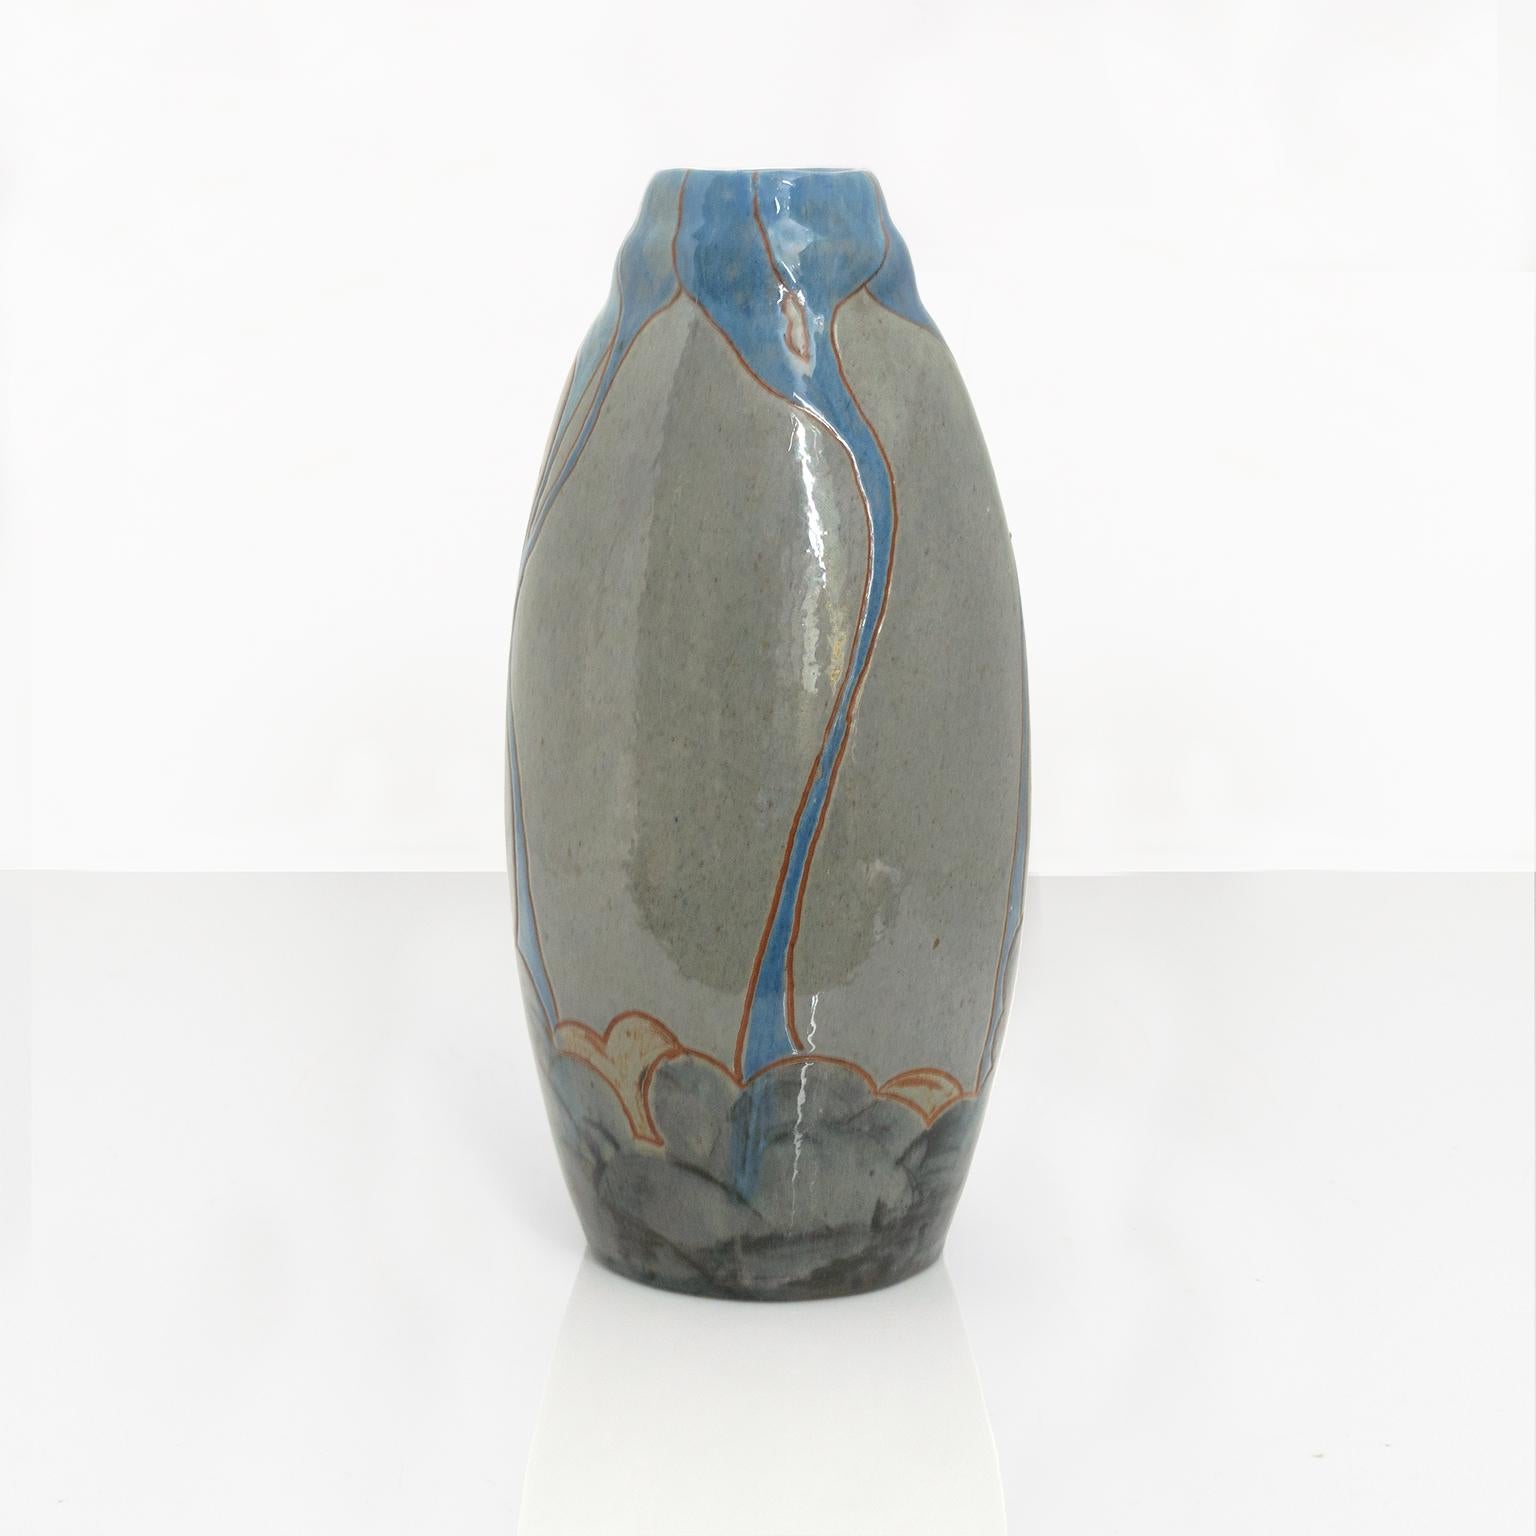 Eine schwedische Jugendstilvase aus Keramik in organischer Form mit schwachen Linien in blauer Glasur über einem neutralen grauen Scherben. Hergestellt von John Andersson für Hogans, um 1910. Signiert am Boden. 

Maße: Höhe: 10,5